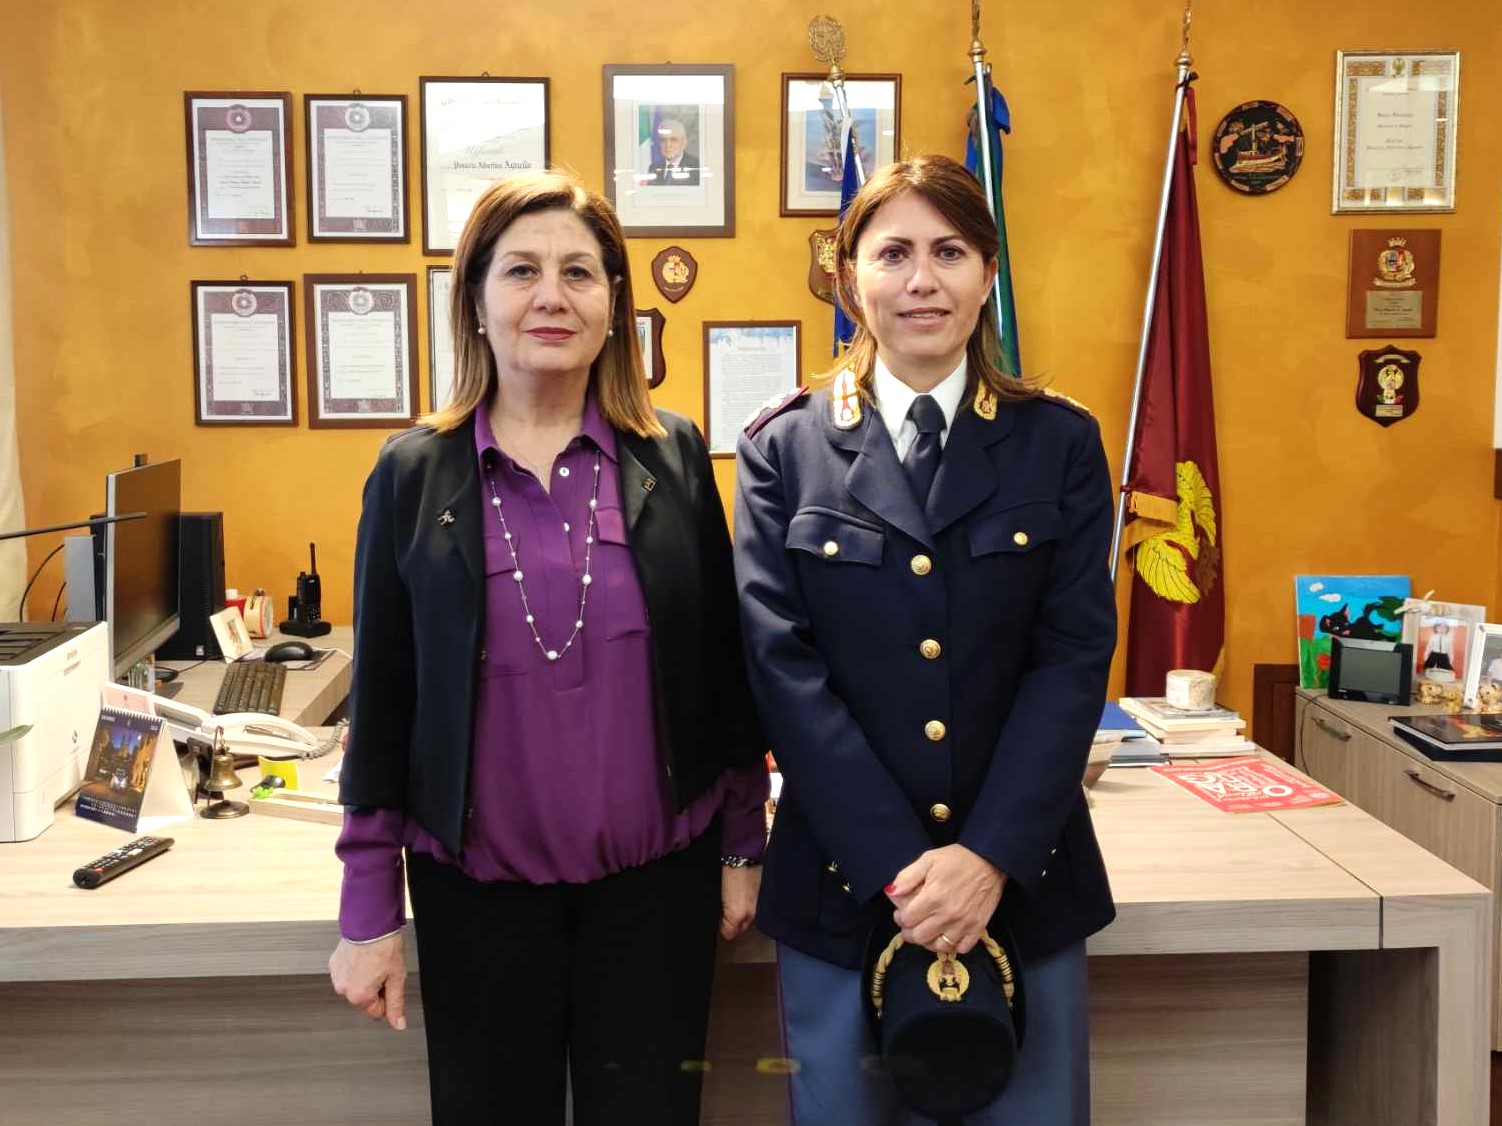 Questa mattina il Questore Pinuccia Albertina Agnello e i funzionari della Questura hanno accolto il Primo Dirigente della Polizia di Stato Patrizia Pagano